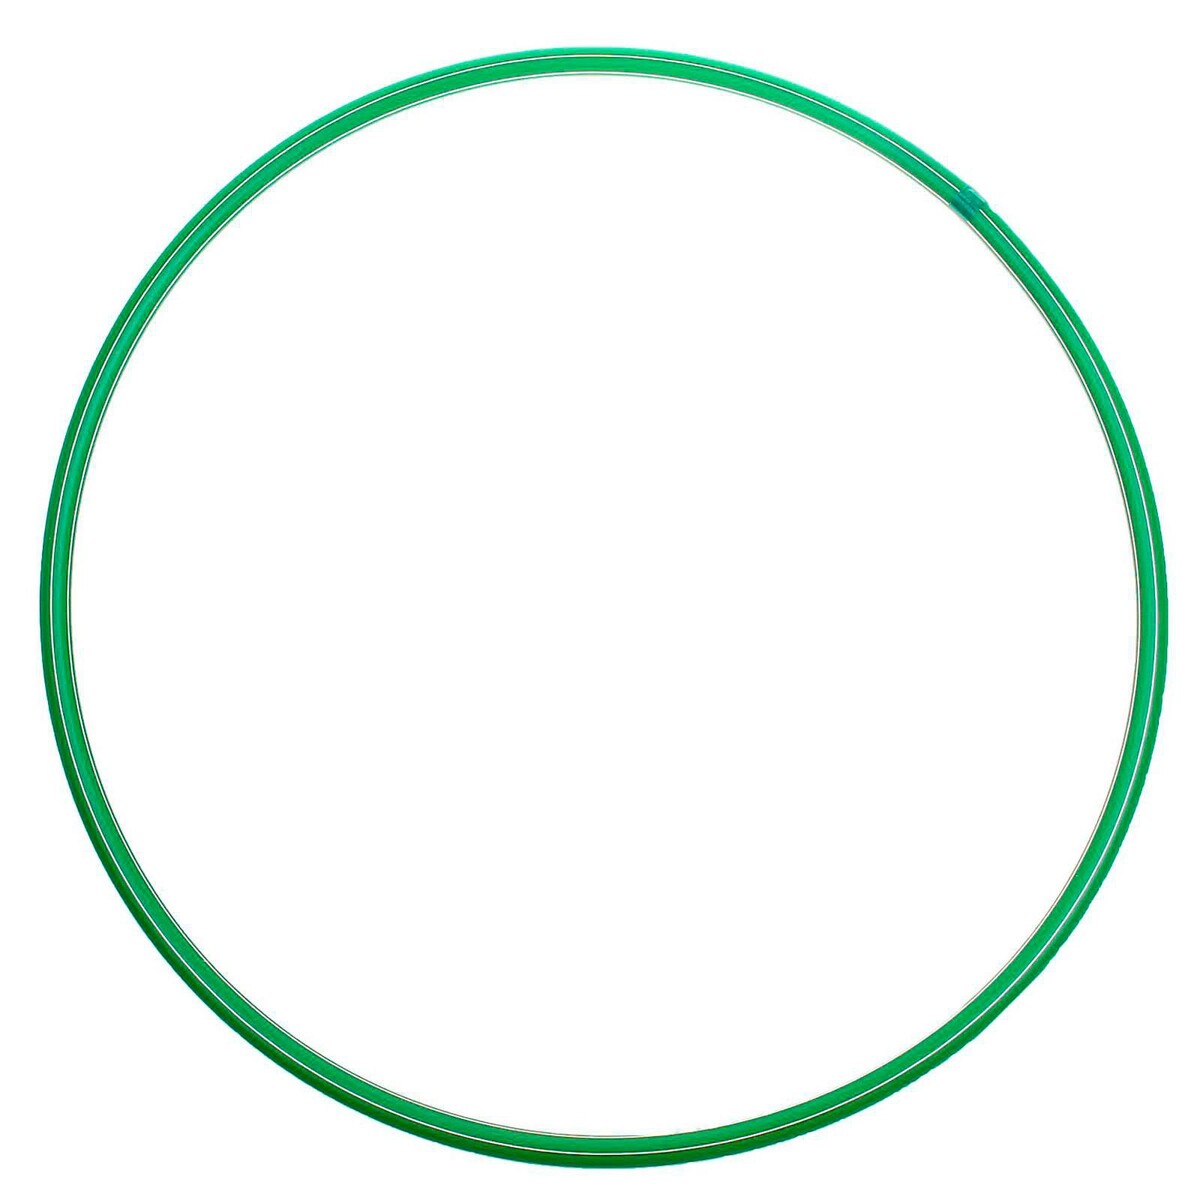 Обруч, диаметр 60 см, цвет зеленый обруч диаметр 60 см голубой